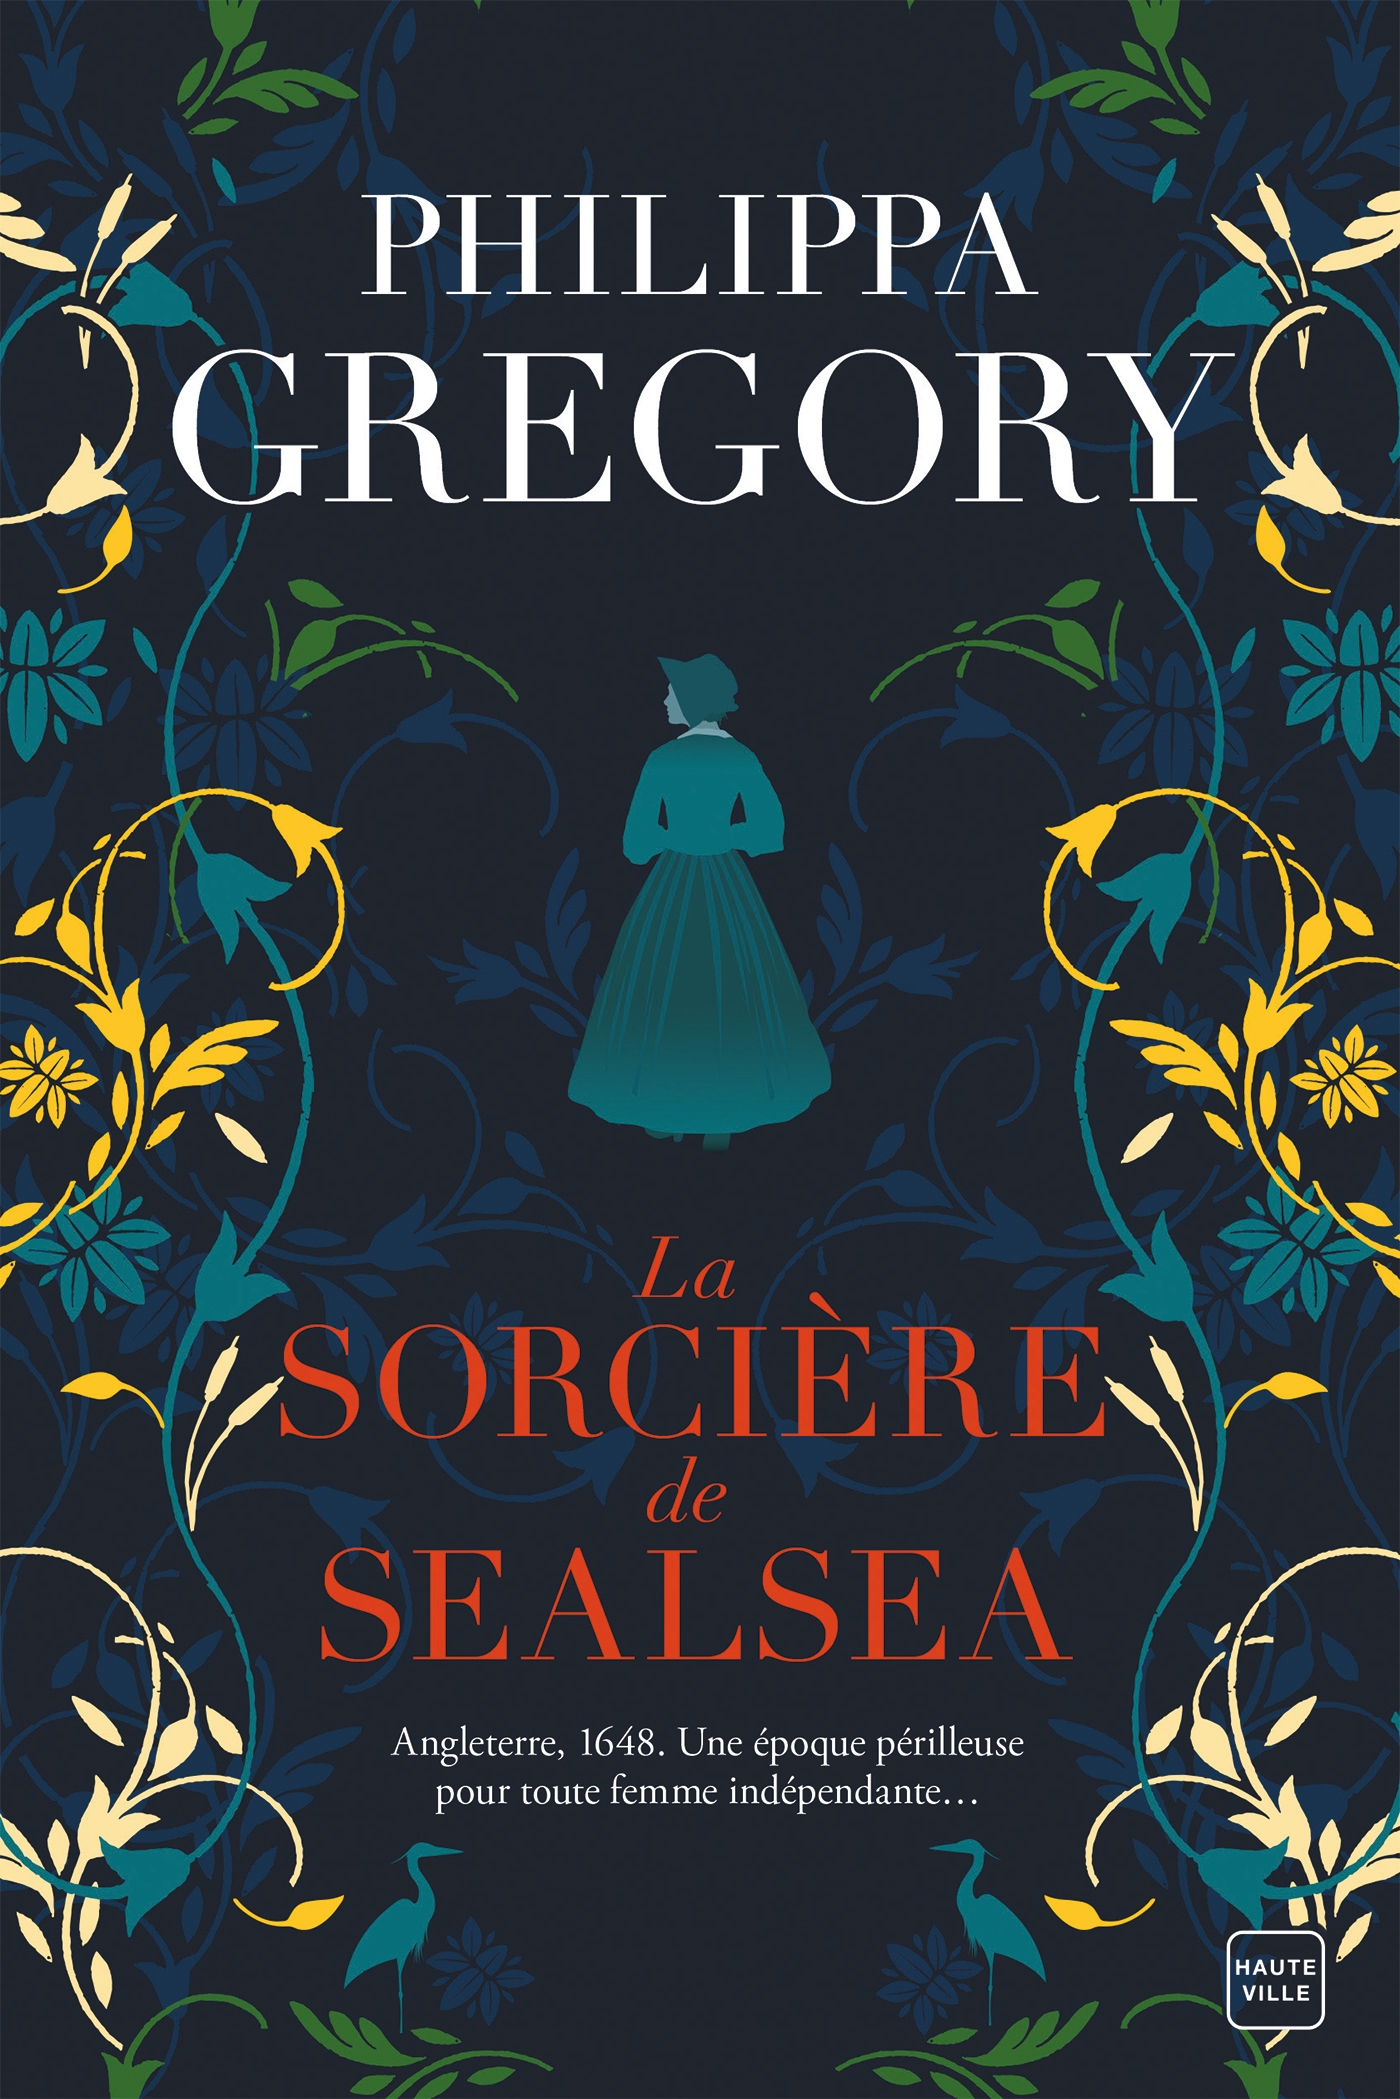 Afficher "La Sorcière de Sealsea"